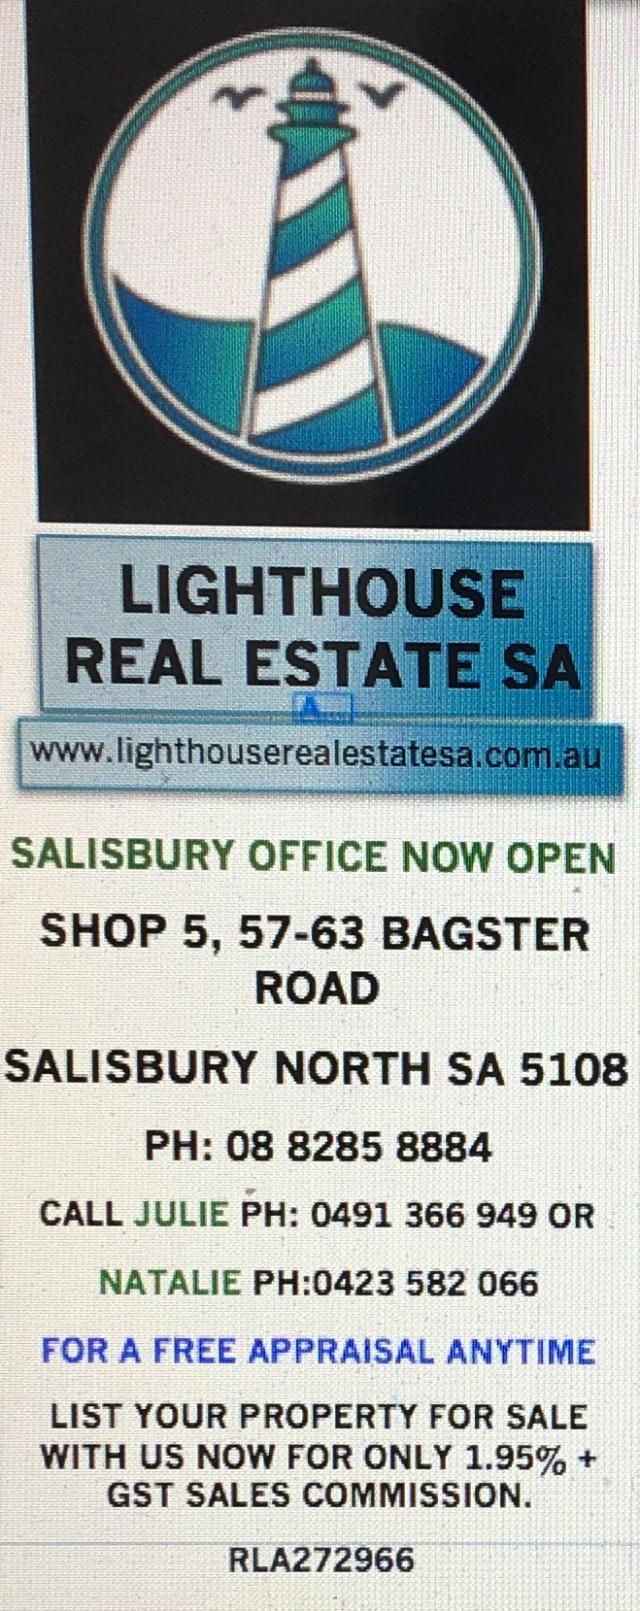 Lighthouse Real Estate SA - Salisbury